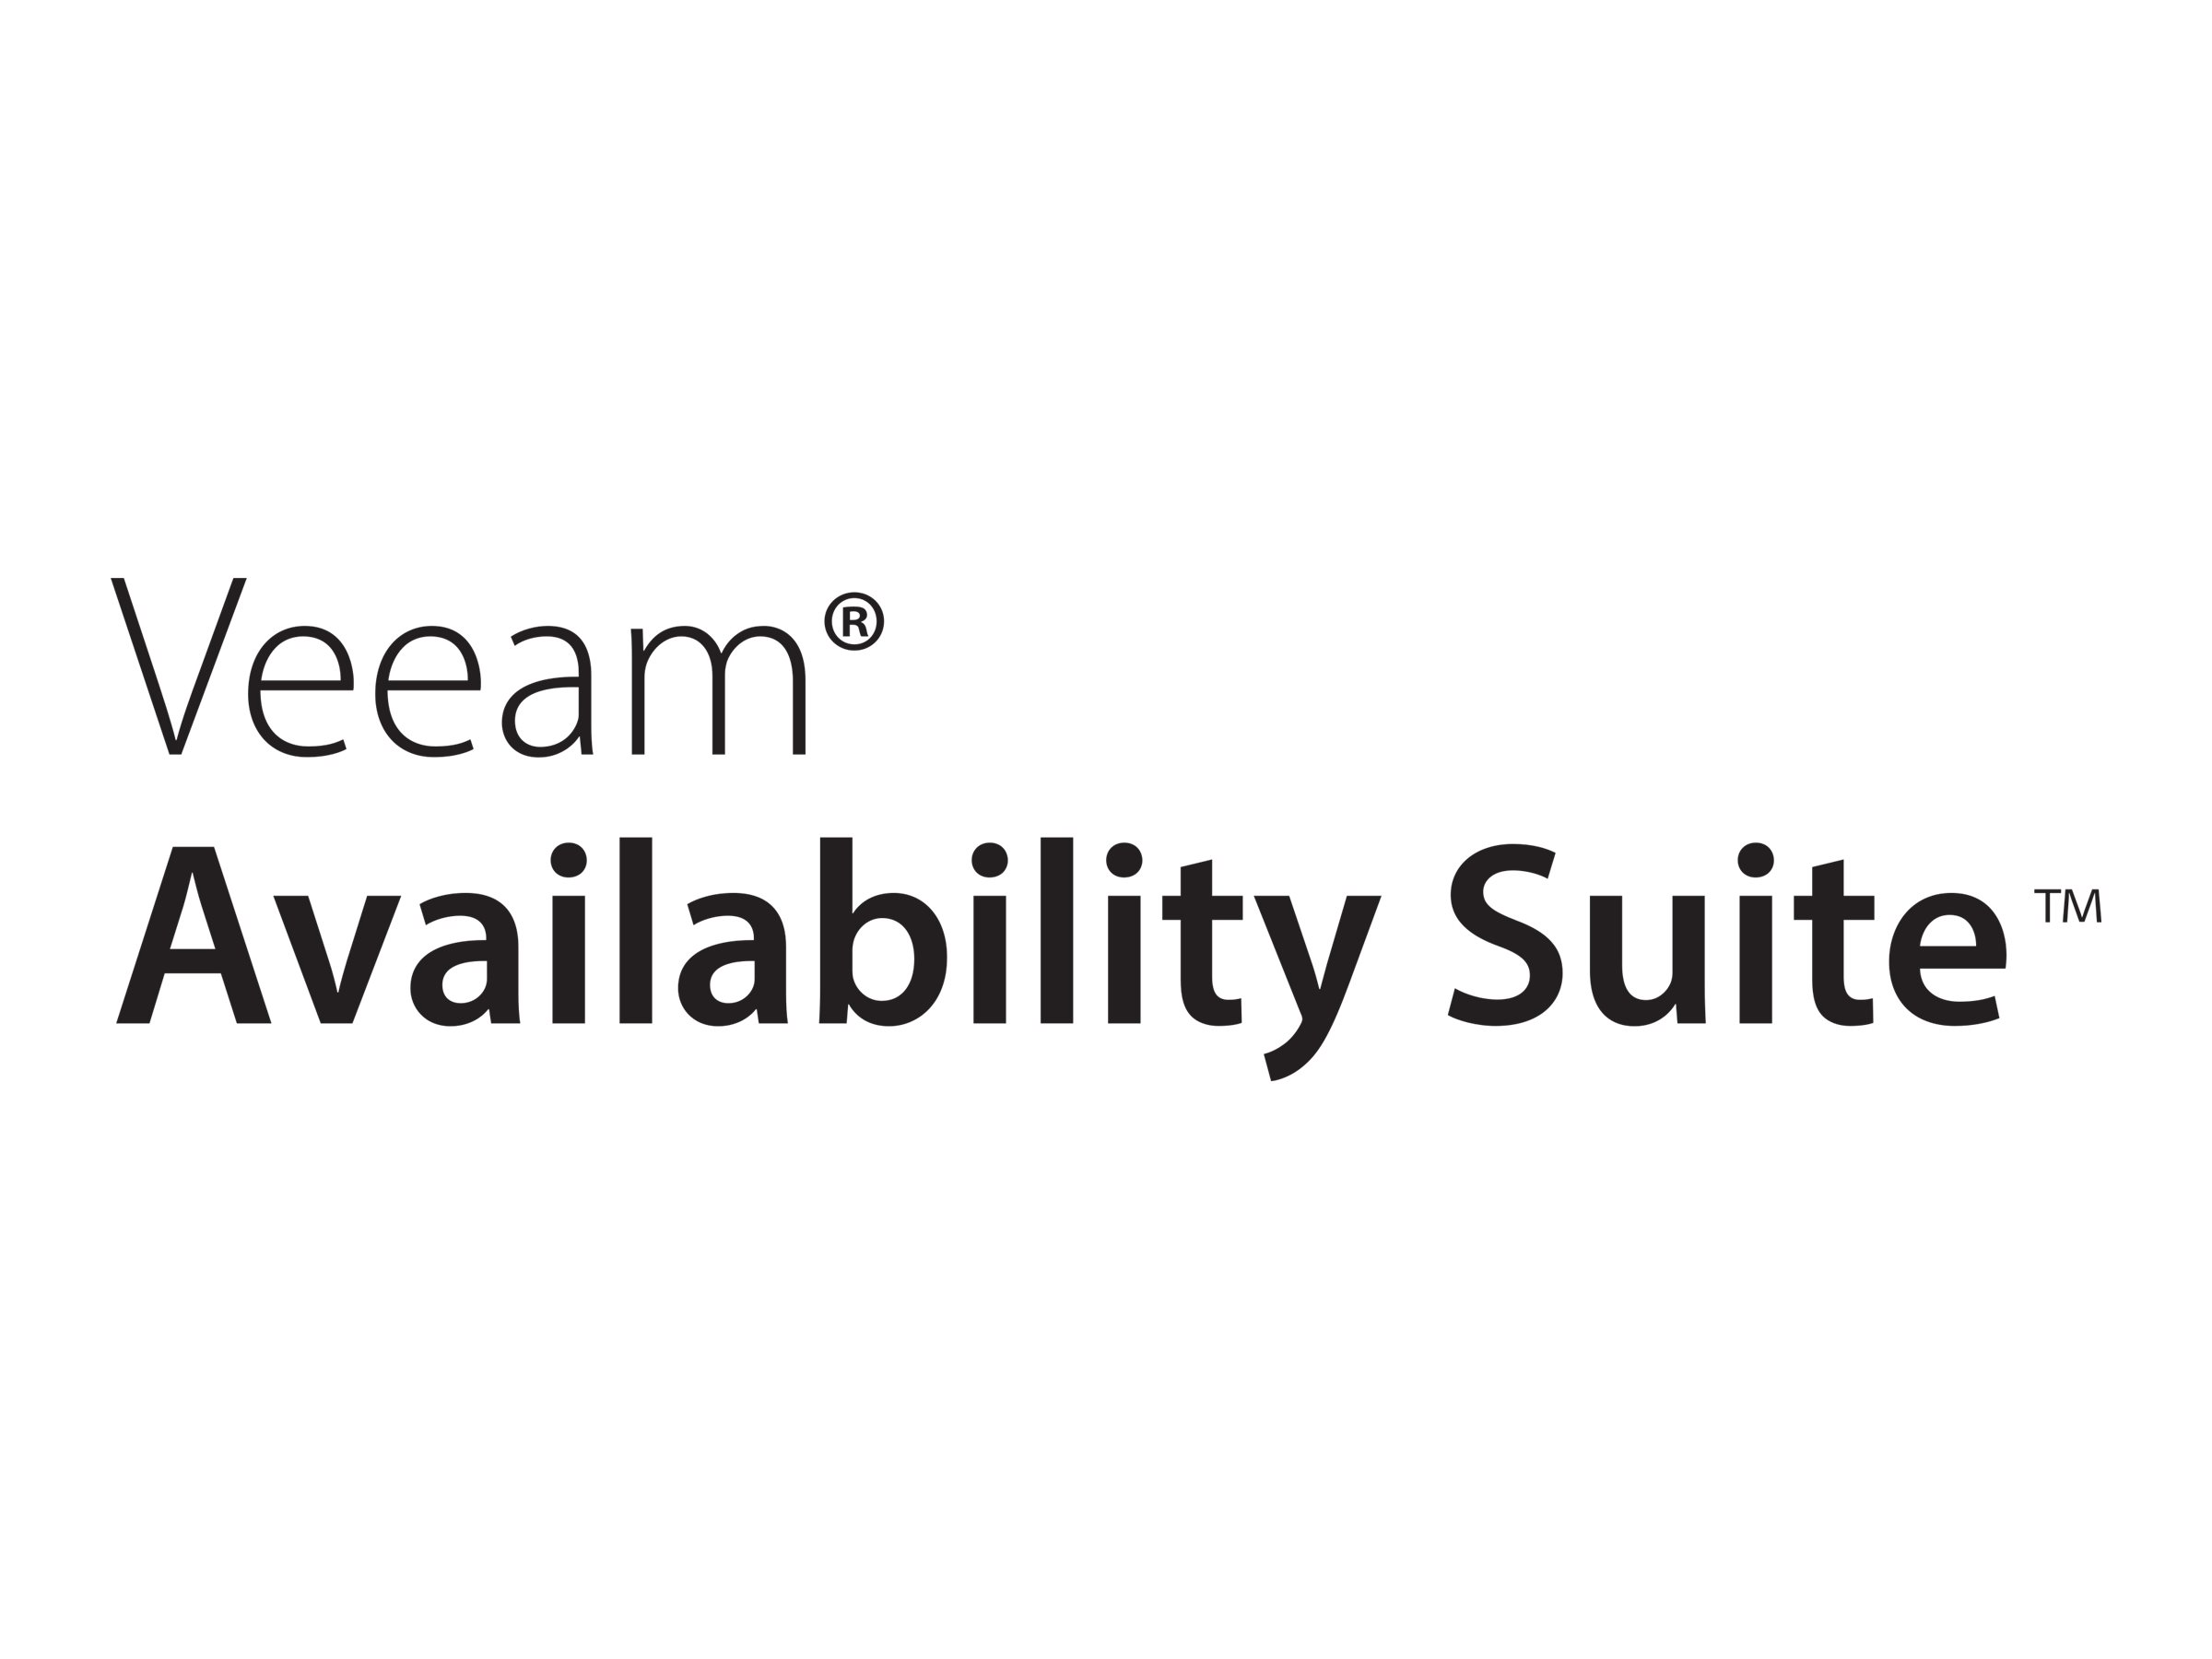 Veeam Availability Suite - Lizenz mit Vorauszahlung (5 Jahre) + Production Support - 1 Anschluss - Öffentlicher Sektor